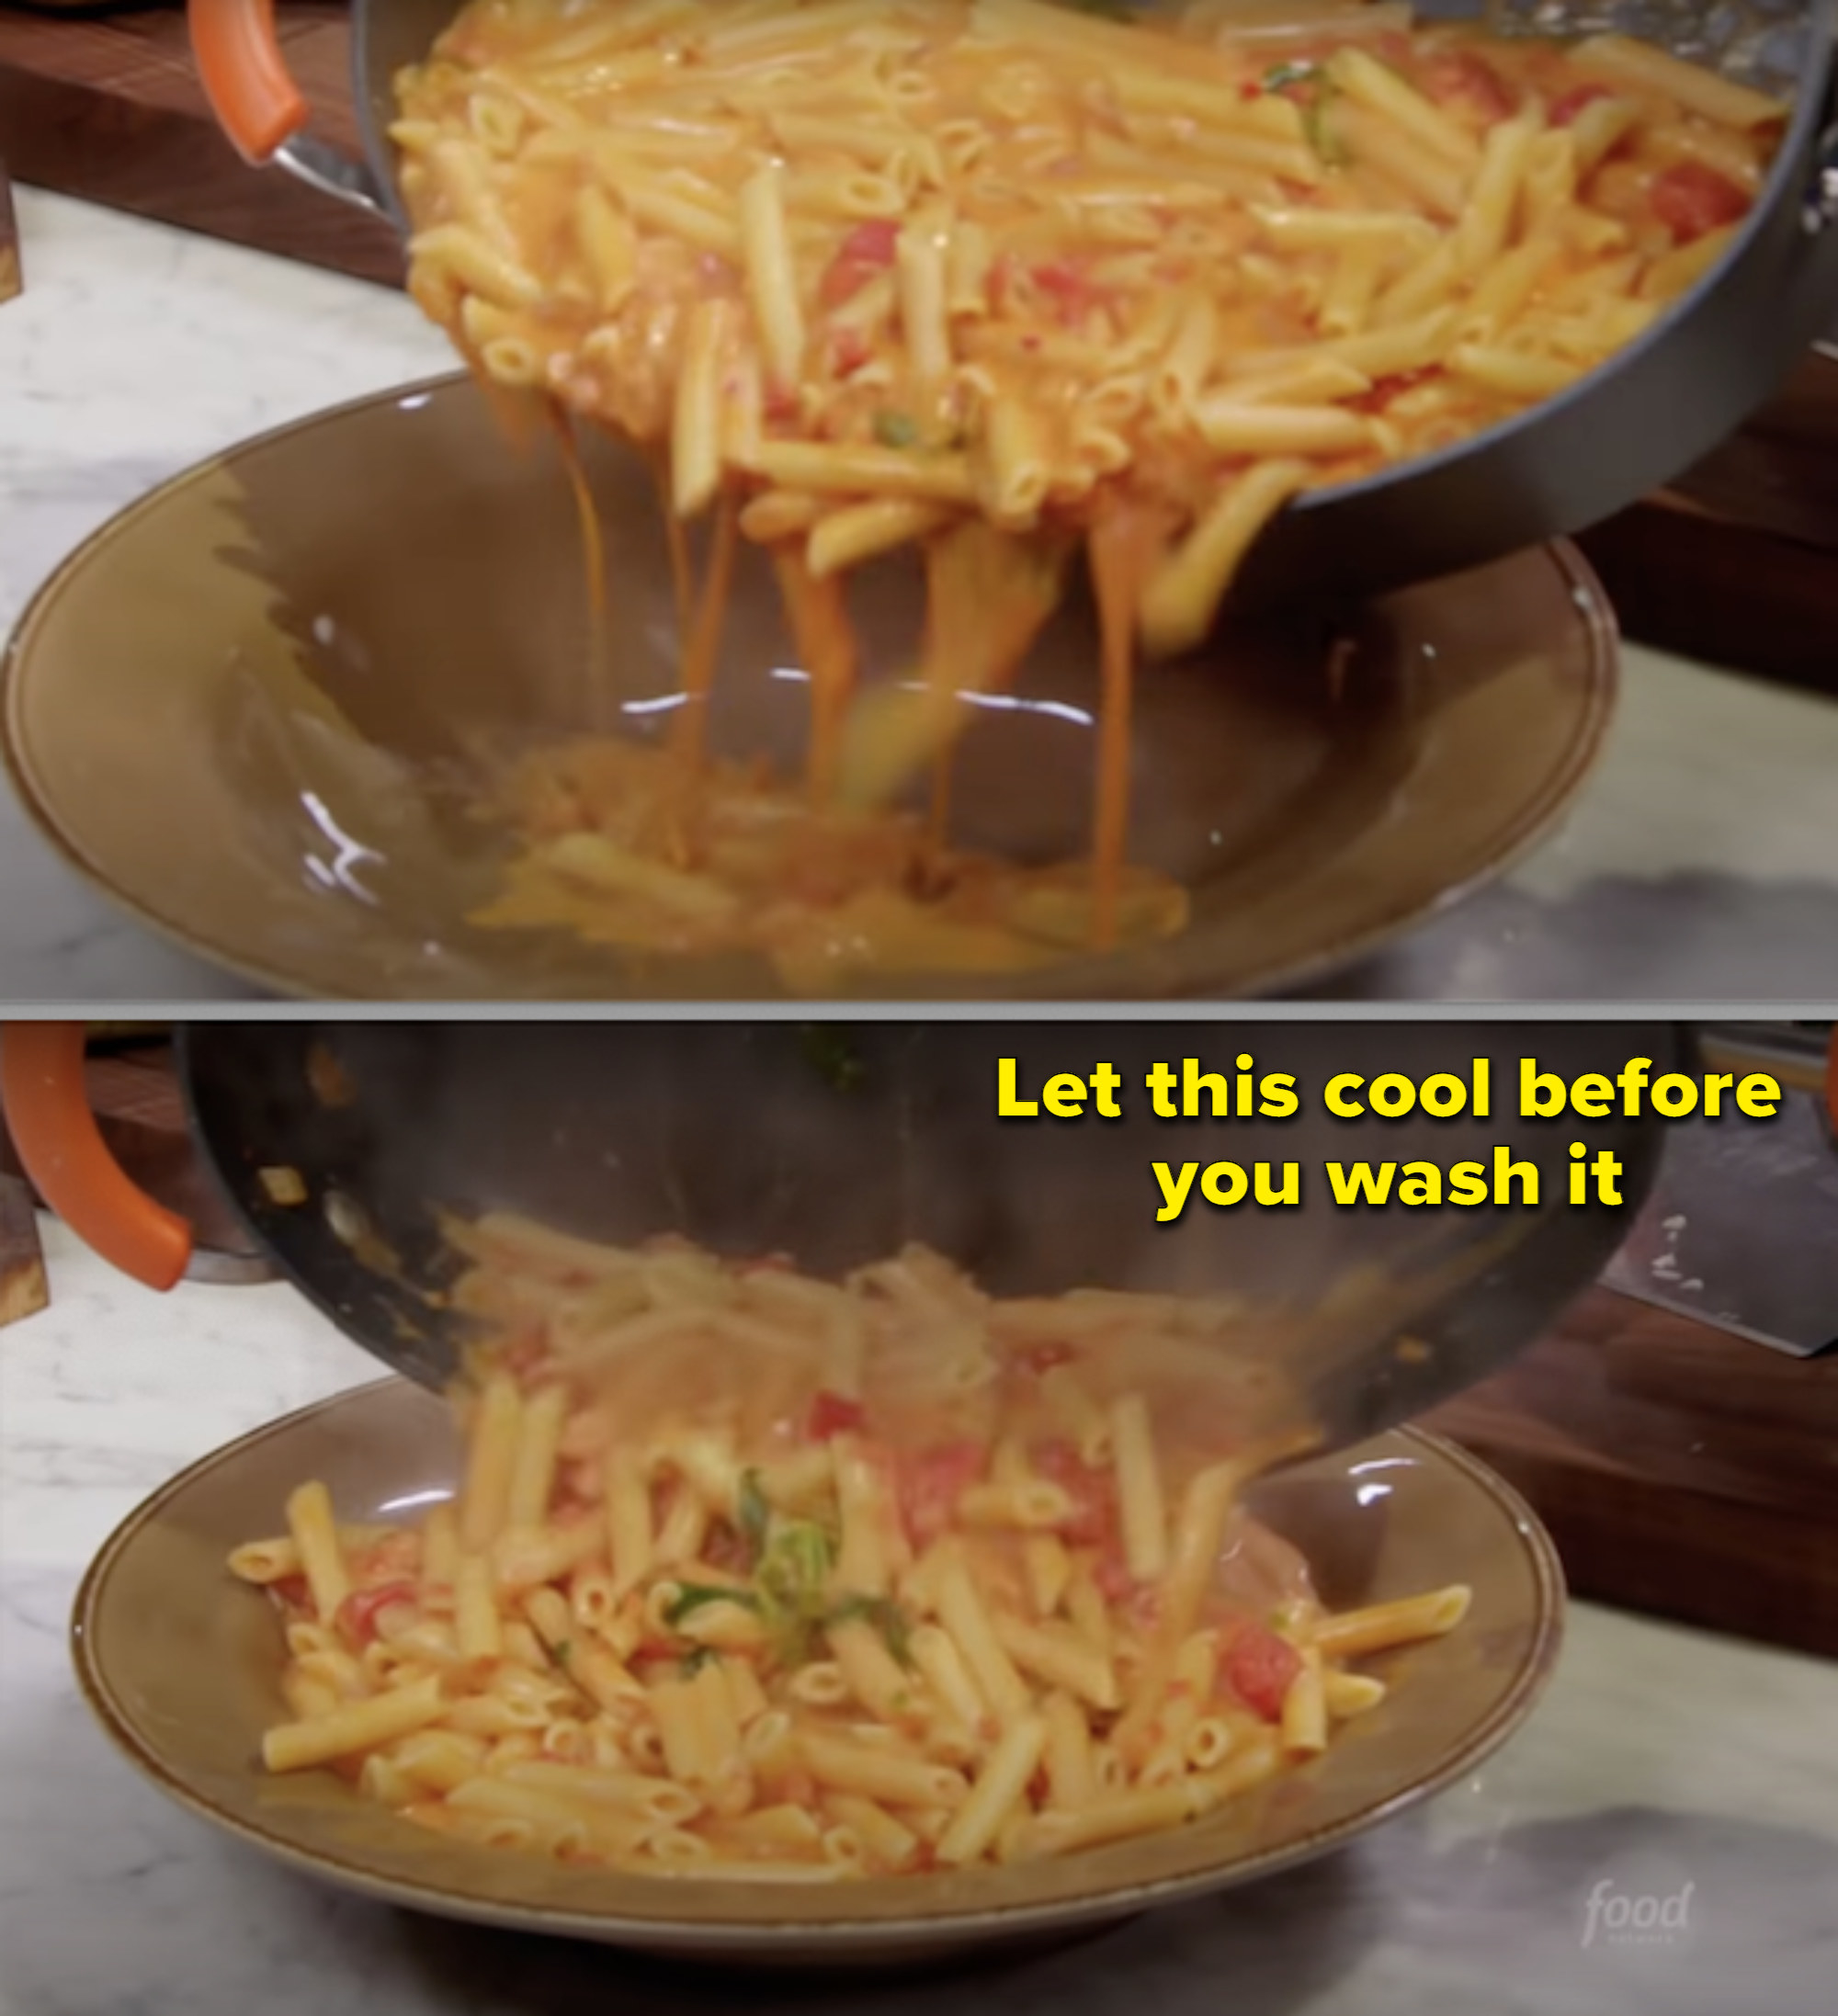 Rachael Ray making pasta